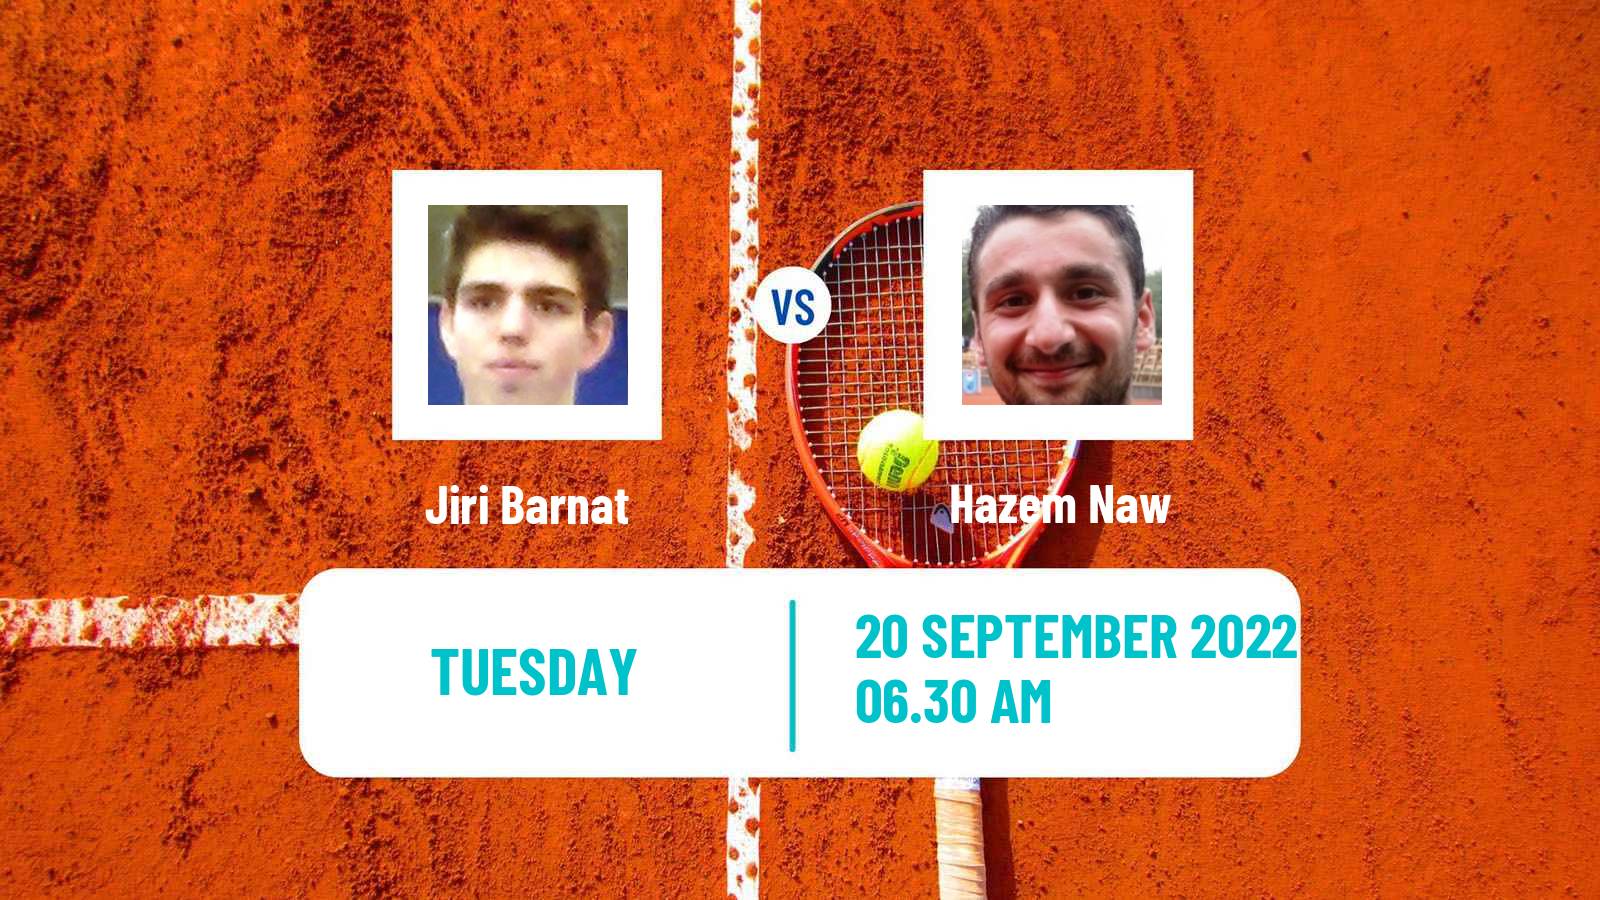 Tennis ITF Tournaments Jiri Barnat - Hazem Naw